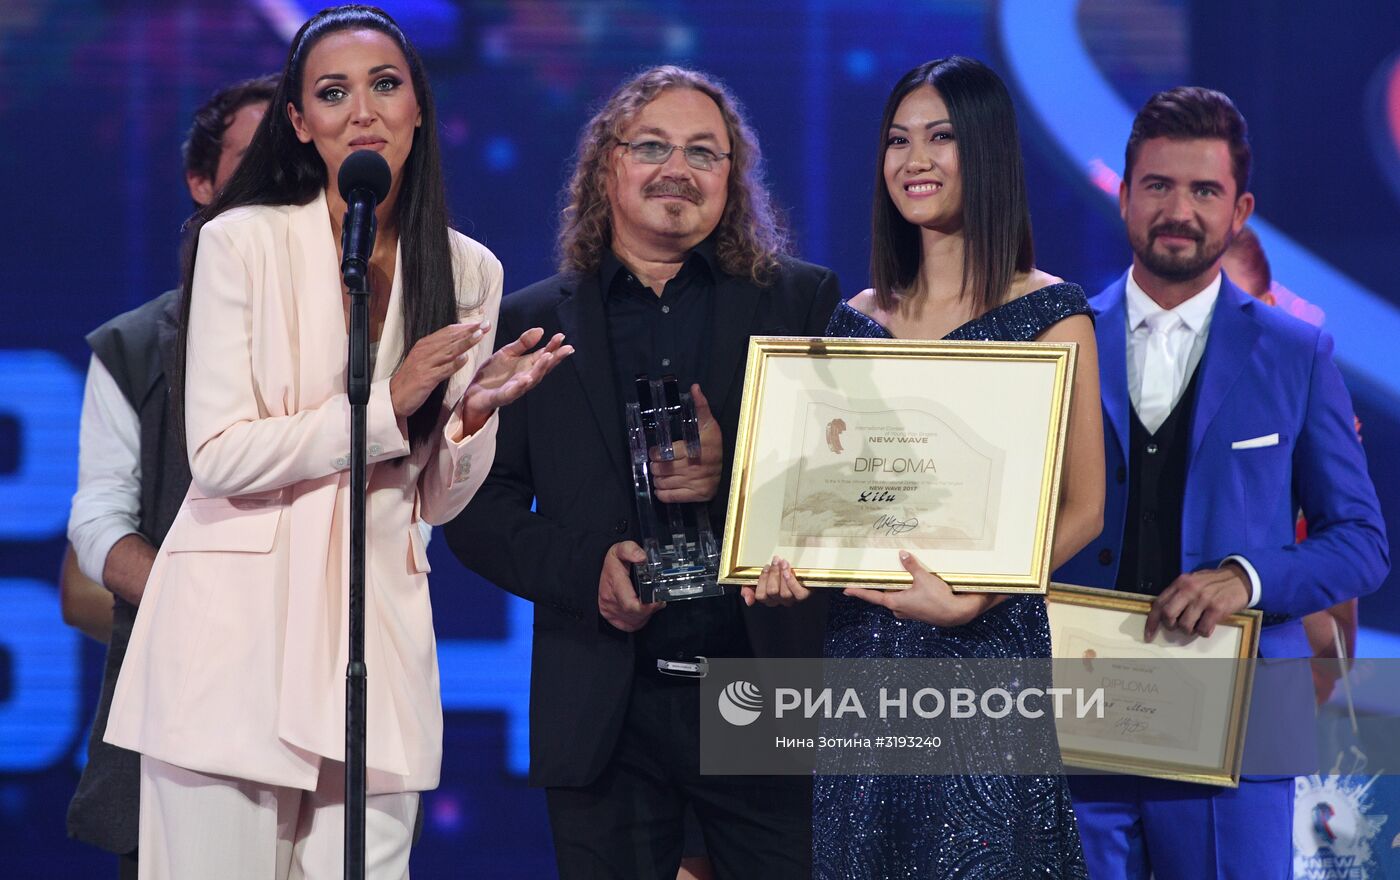 Закрытие конкурса "Новая волна - 2017" в Сочи